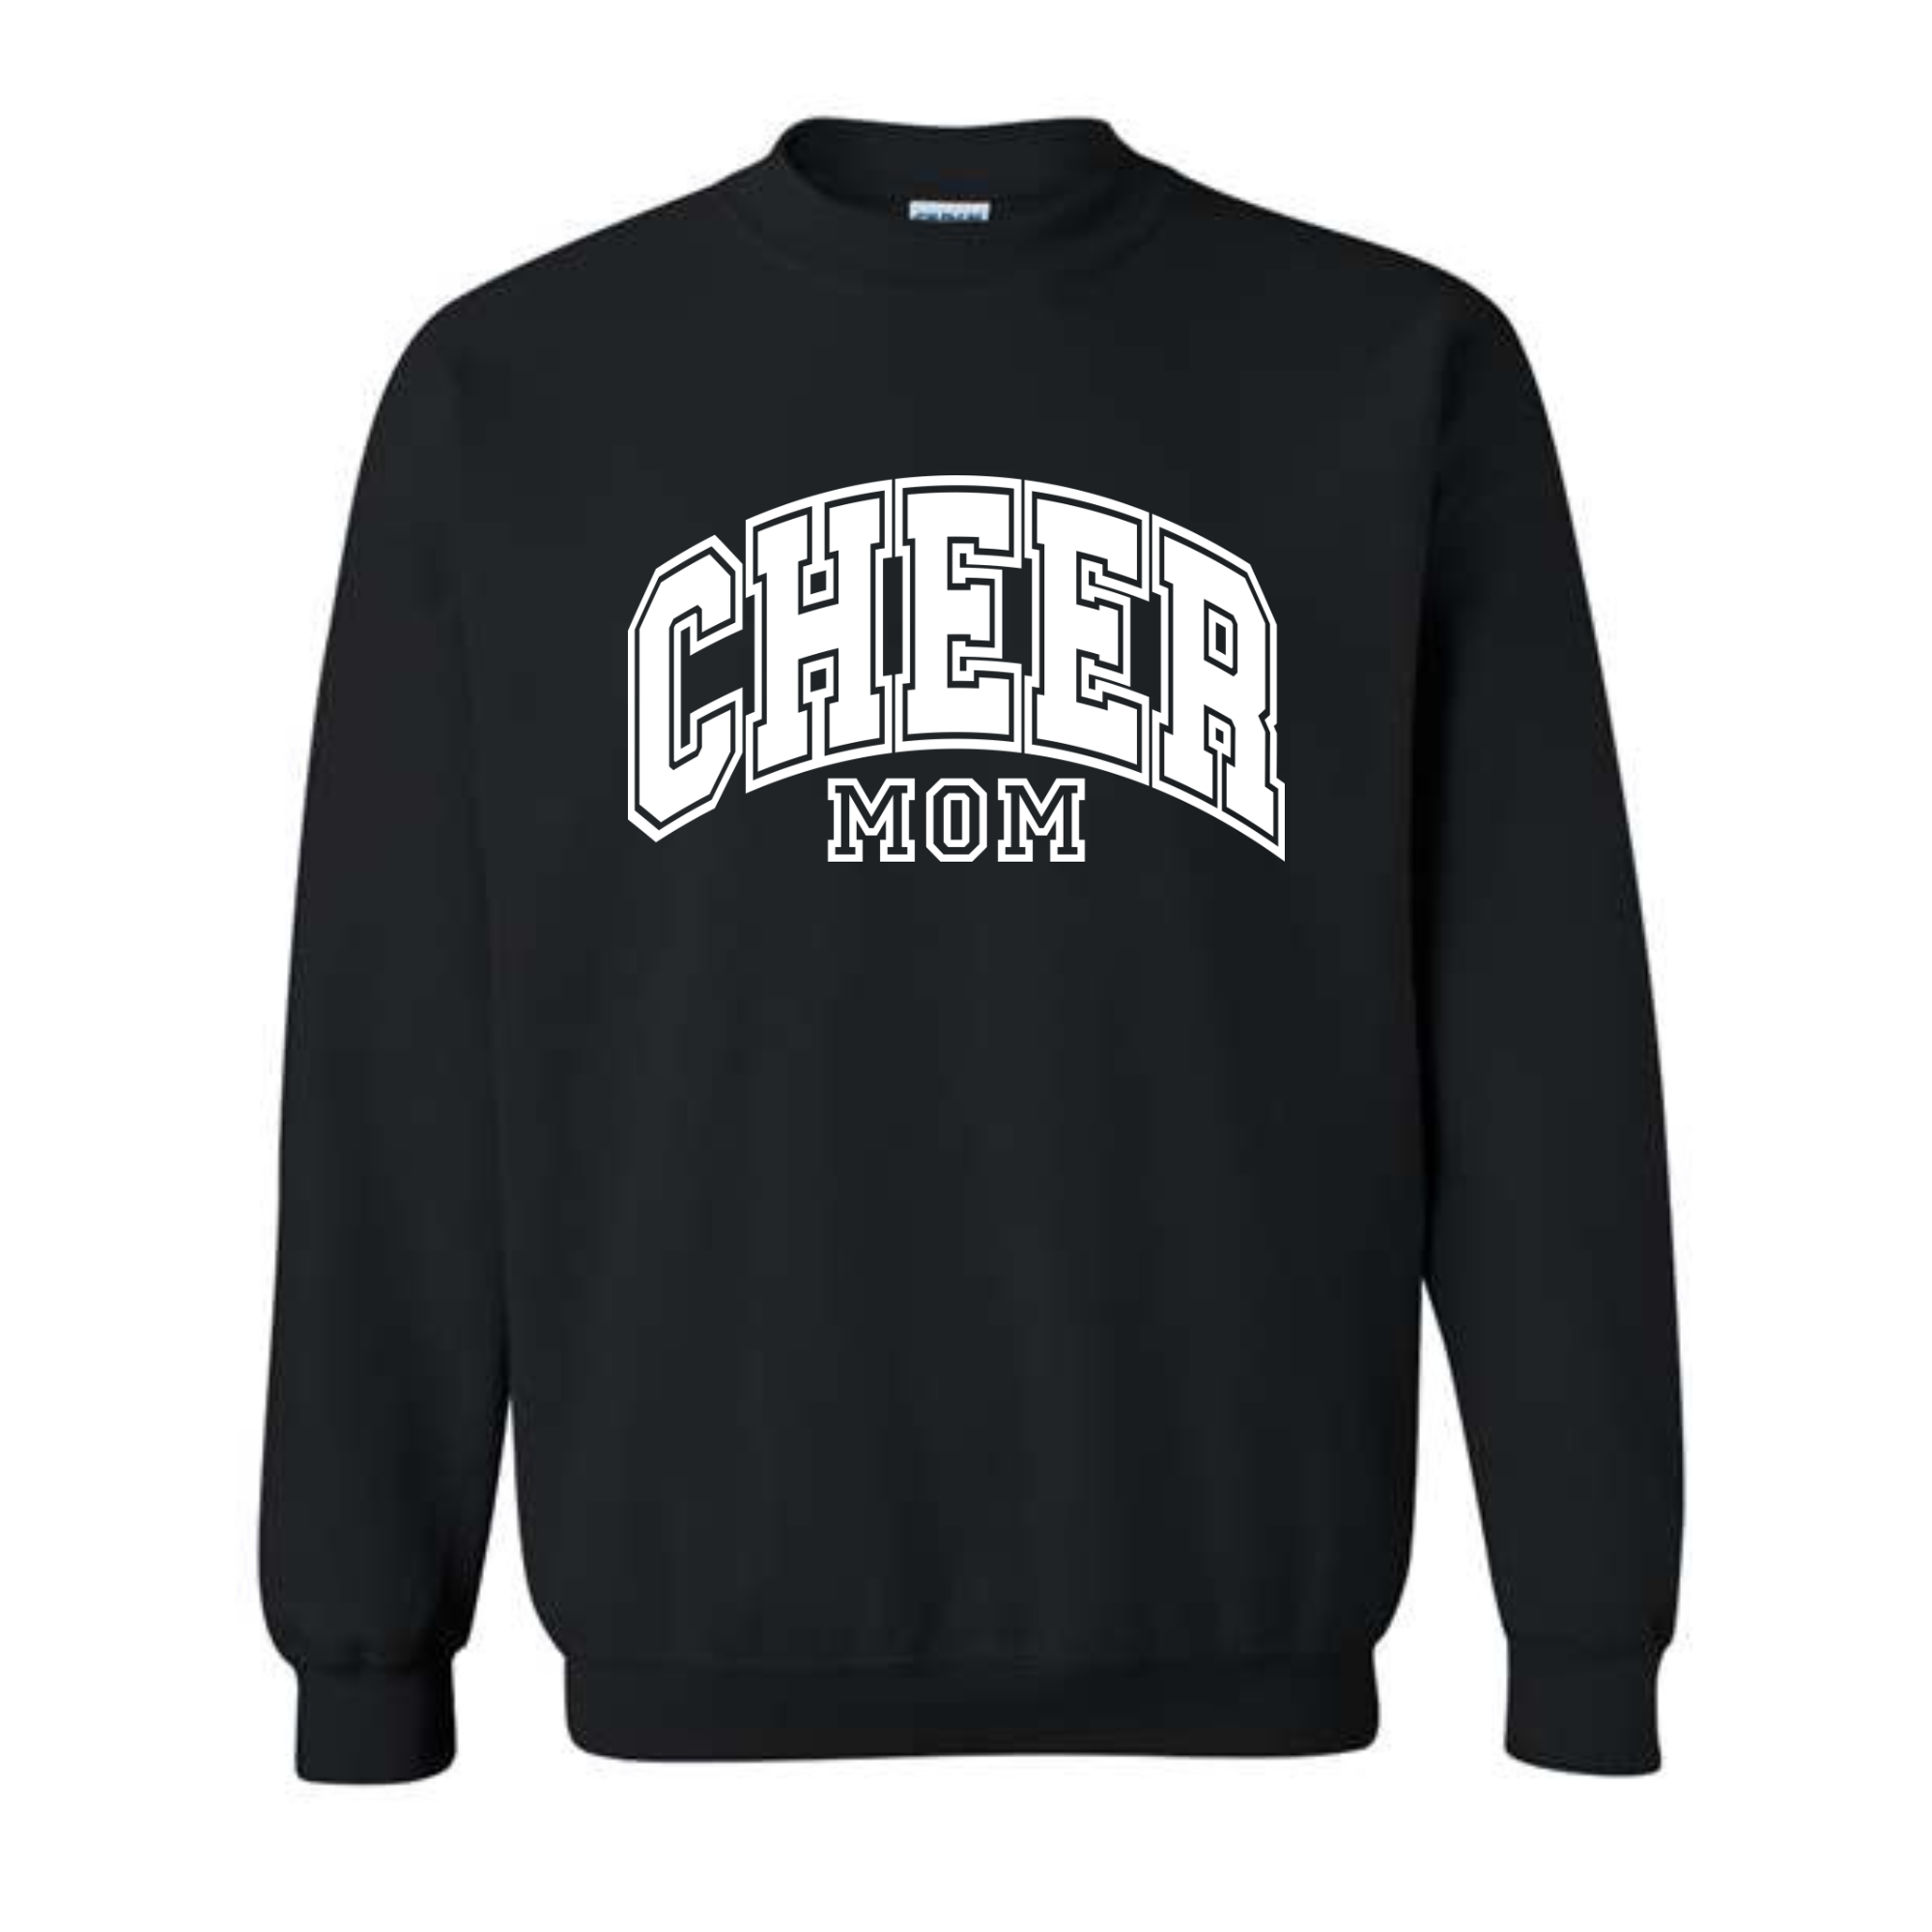 Central Cheer Mom Crewneck Sweatshirt- 18000